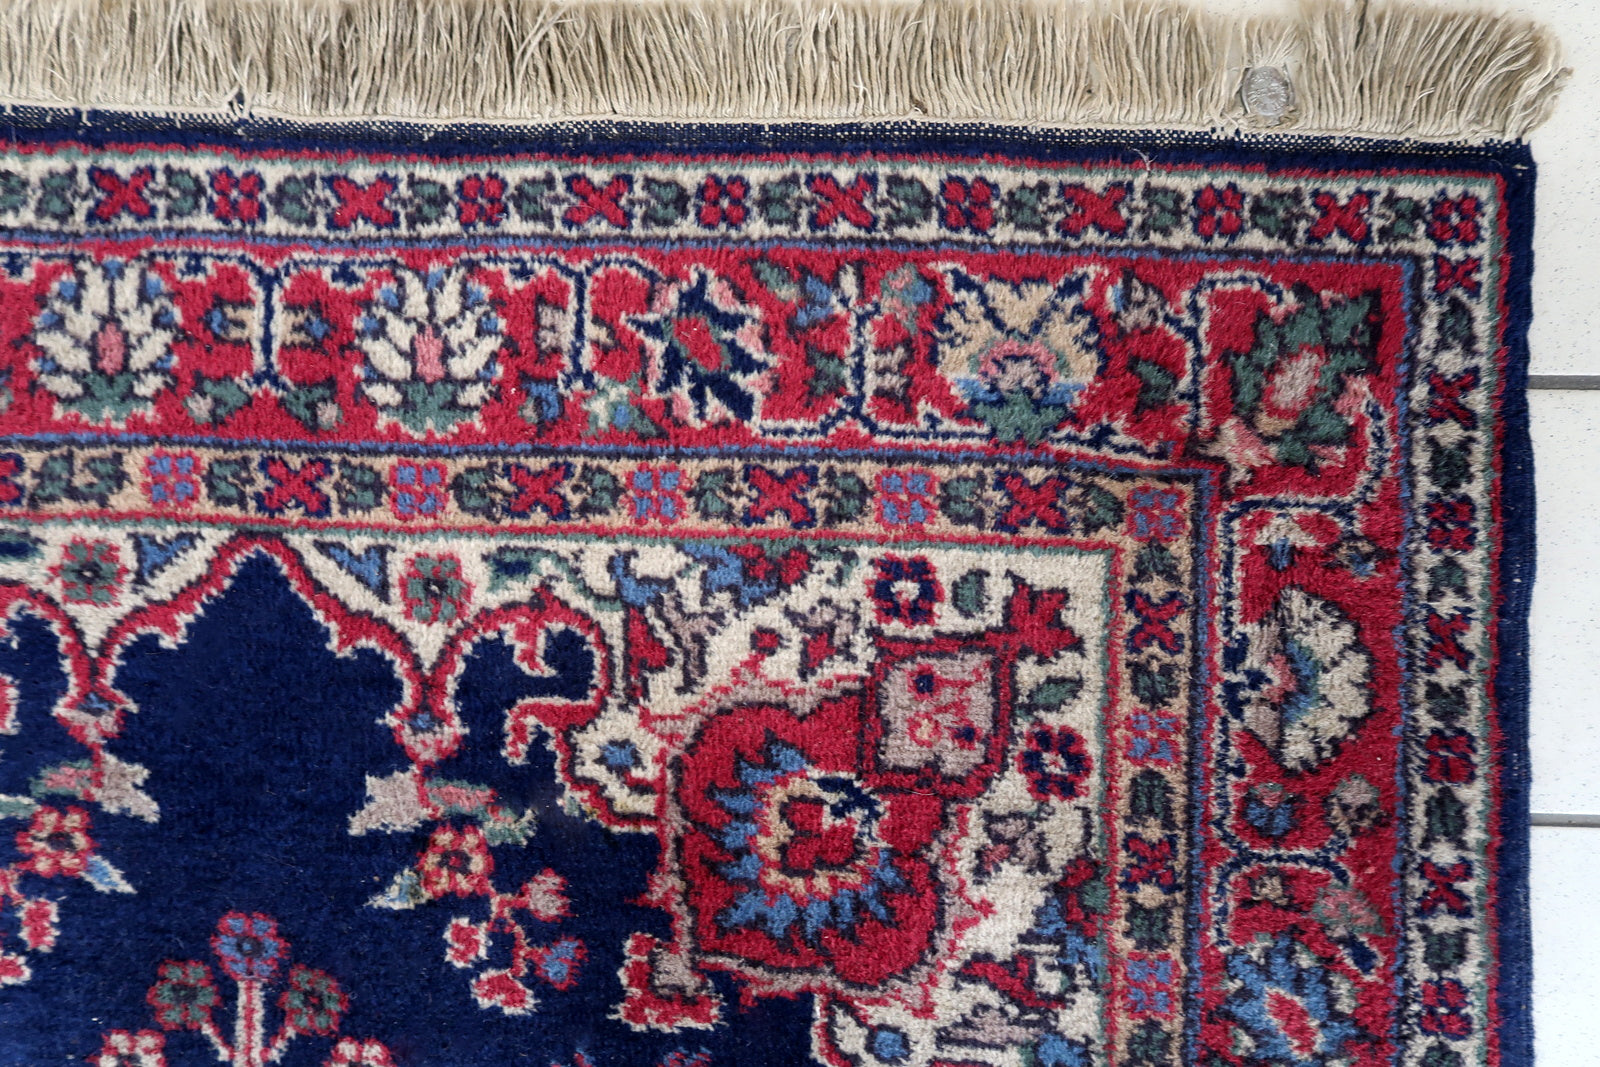 Handmade antique Persian Kerman rug 1930s